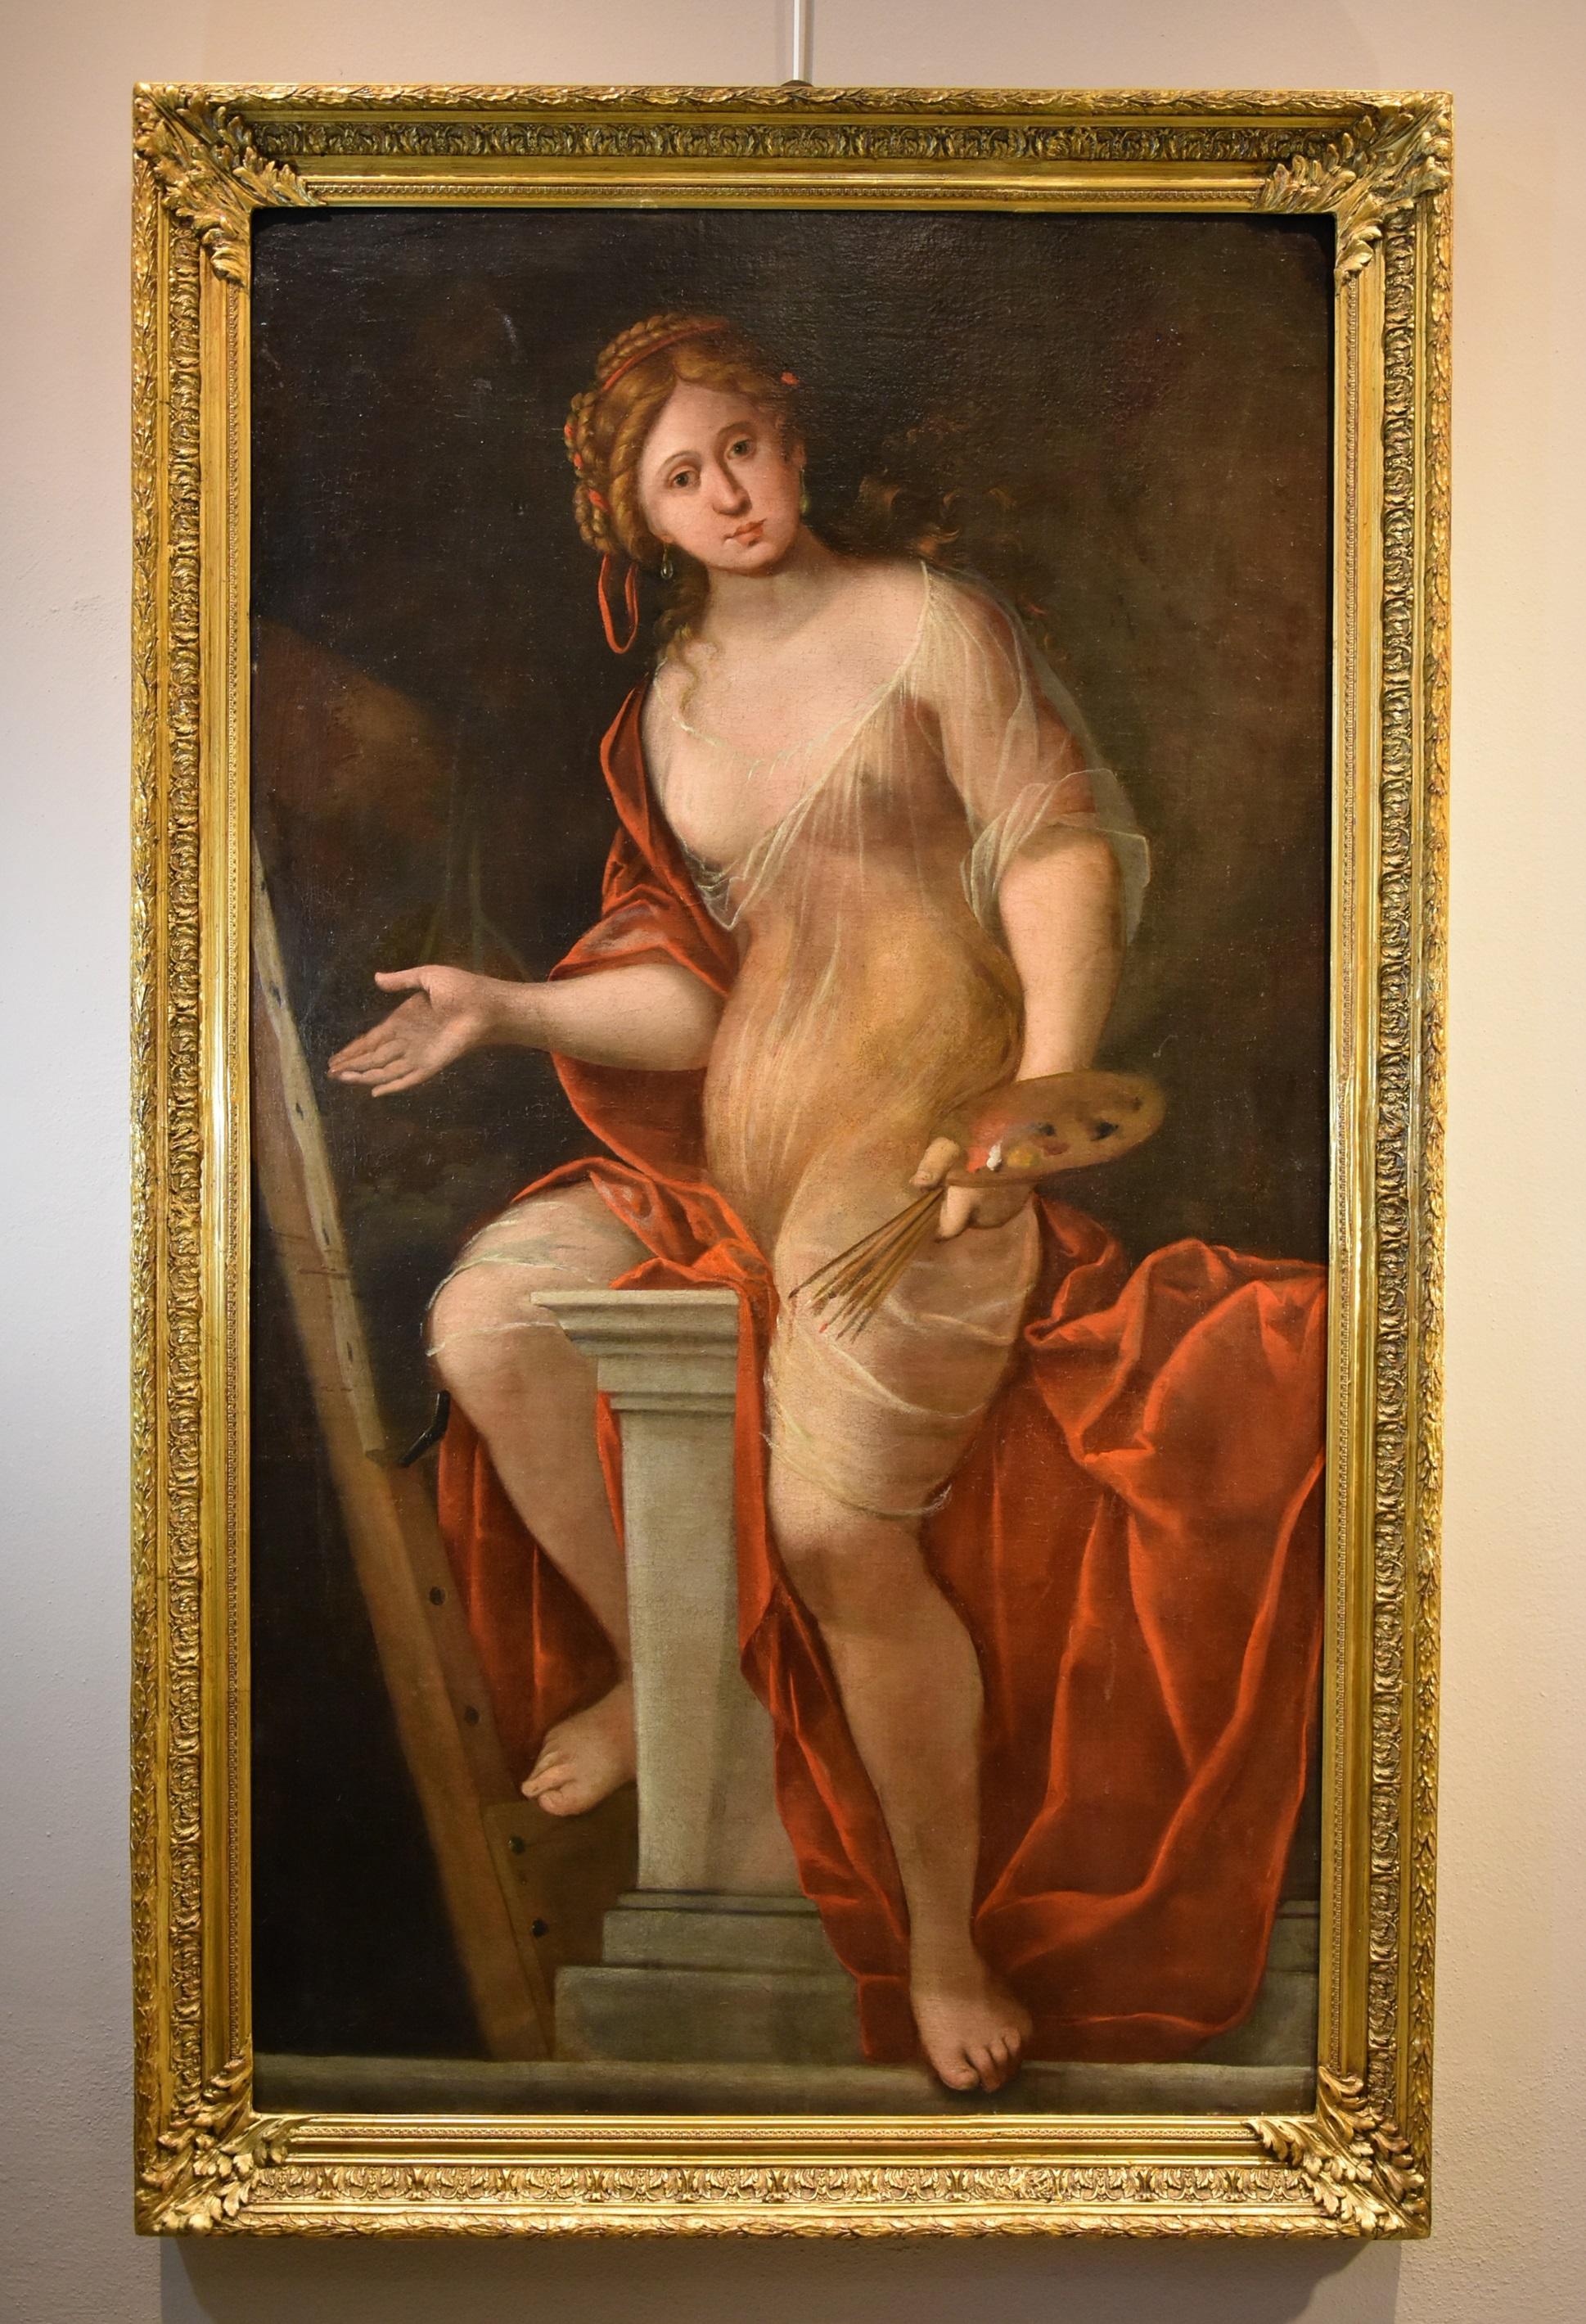 Terwesten Frau Allegory Kunstgemälde Öl auf Leinwand 17/18. Jahrhundert Alter Meister  – Painting von Mattheus Terwesten (the Hague, 1670 - 1757)